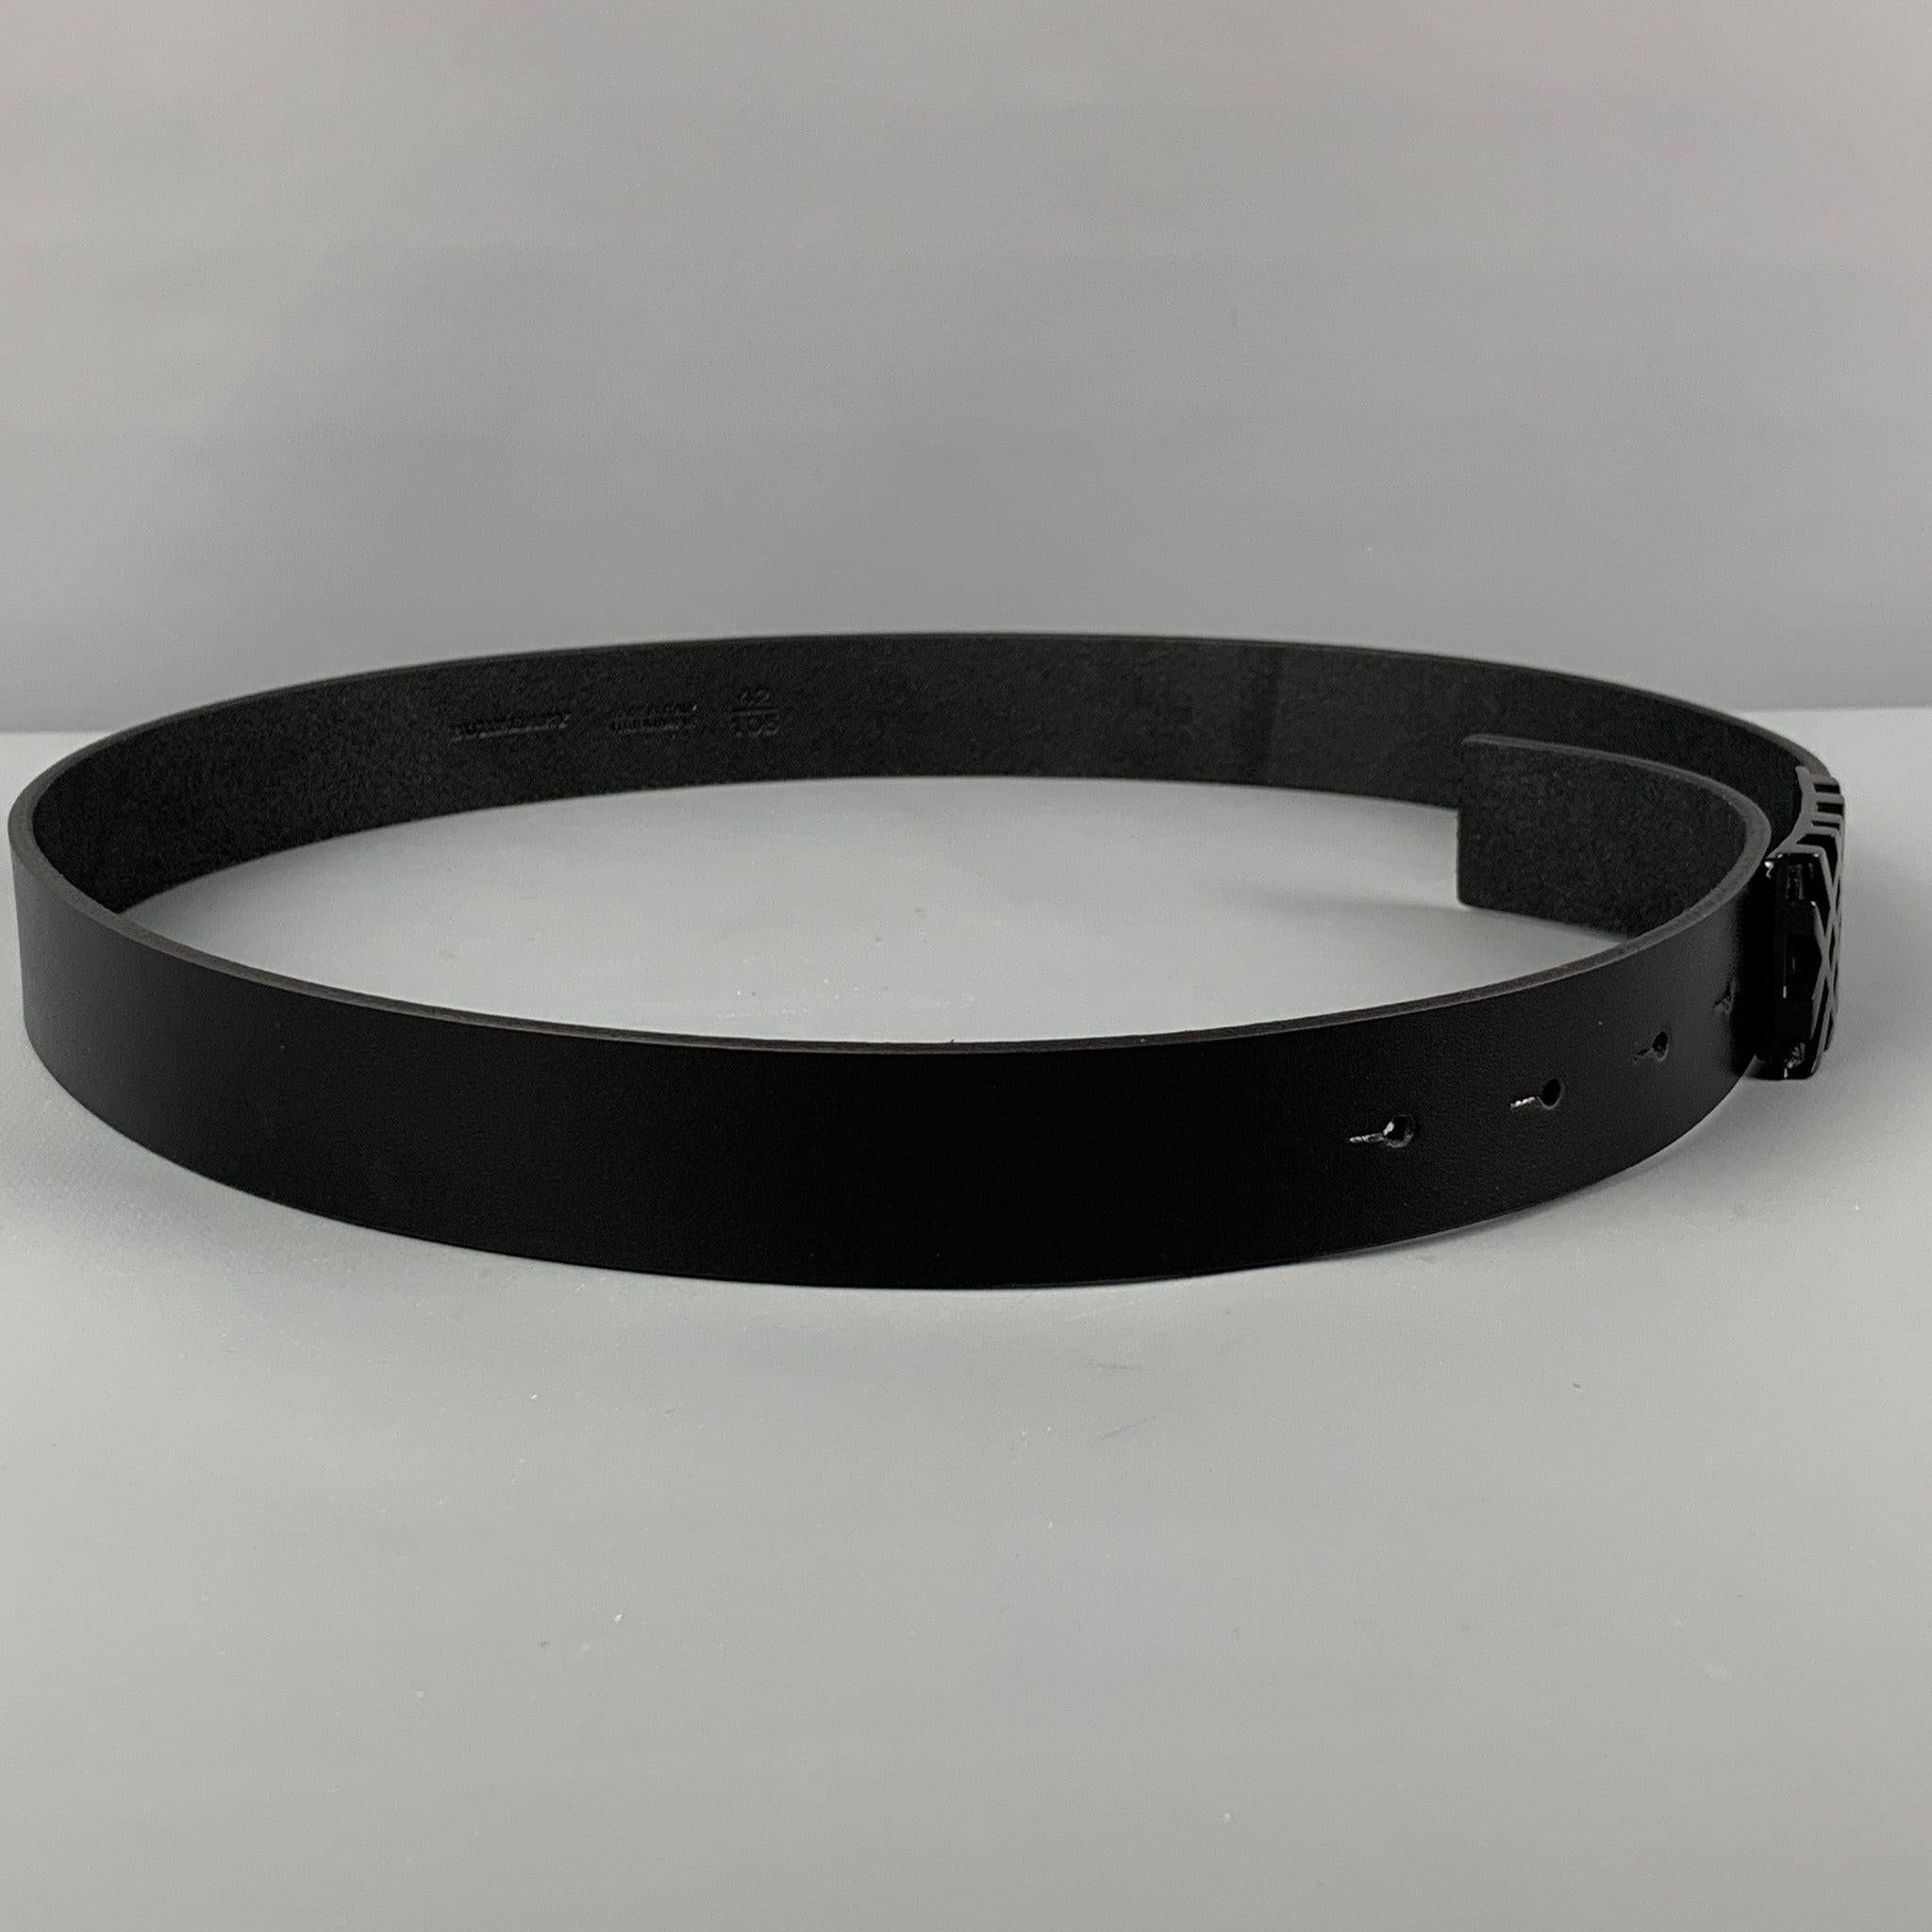 Cette ceinture BURBERRY en cuir noir est ornée d'une boucle géométrique. Livré avec boîte. Fabriquées en Italie.
Très bien
Etat d'occasion. La ceinture a été modifiée par un professionnel.  

Marqué :   42/105Longueur : 39 pouces  Largeur : 1.25